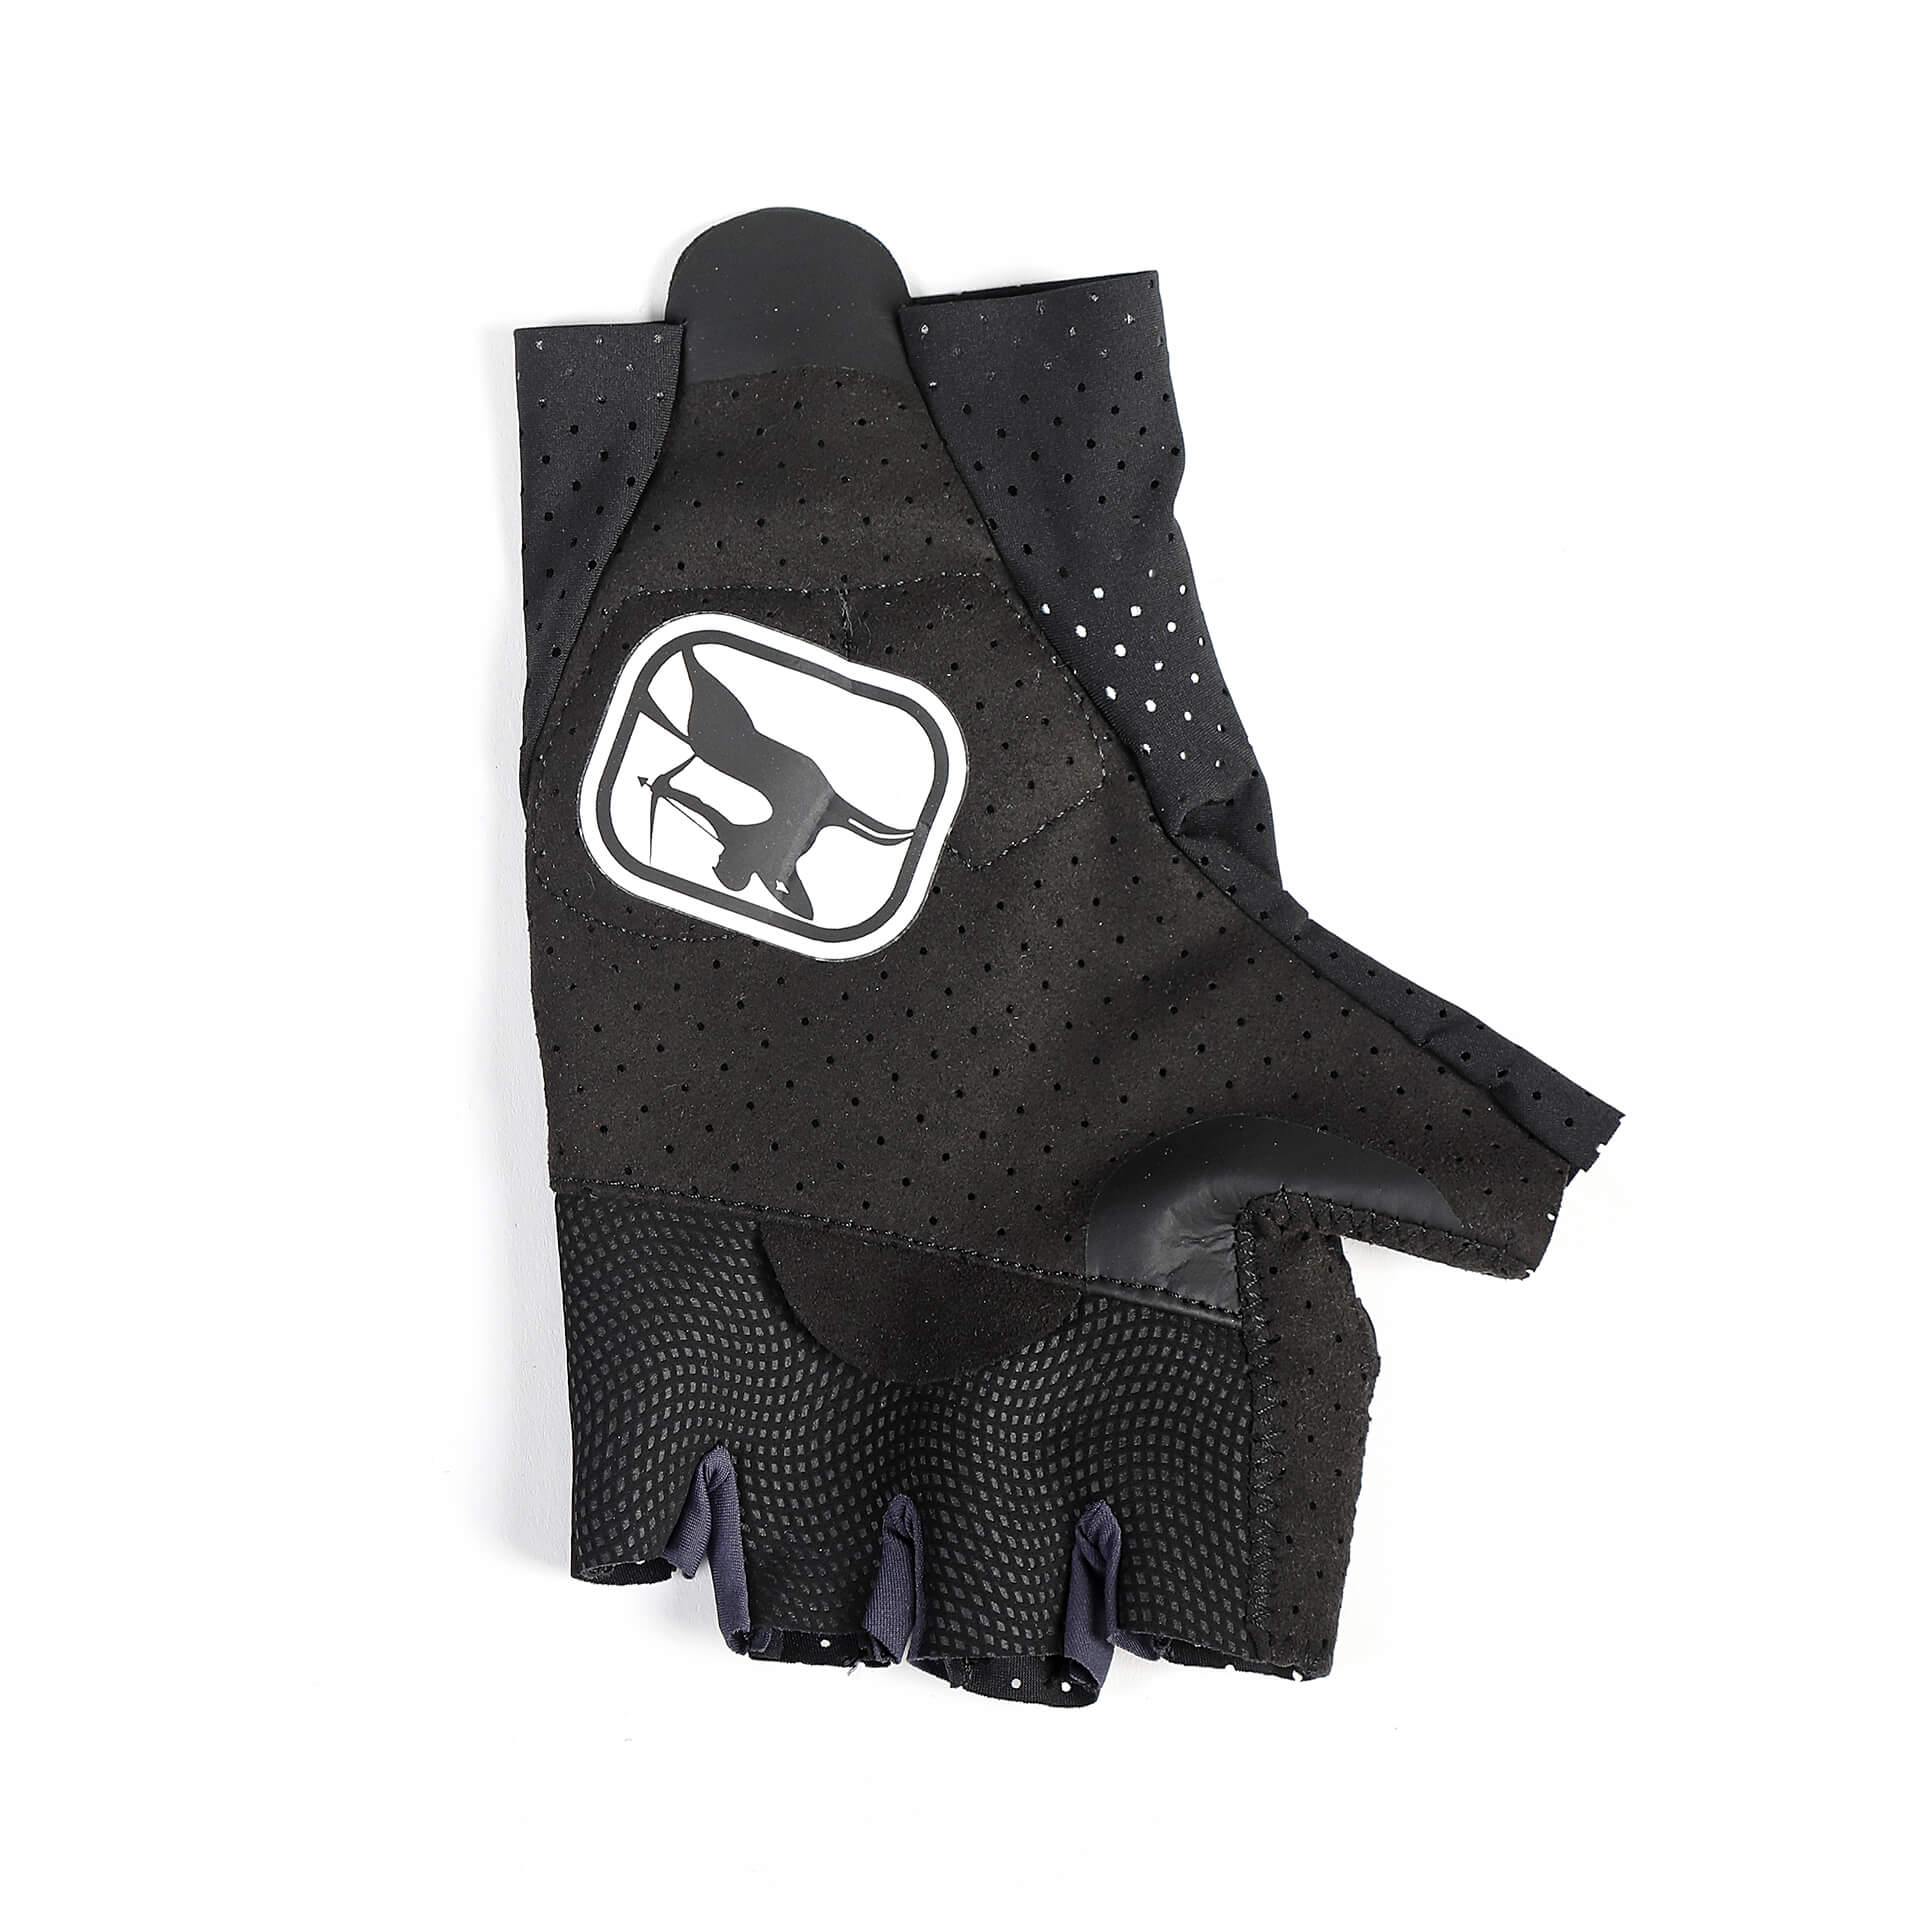 FR-C Pro Aero Lyte Gloves